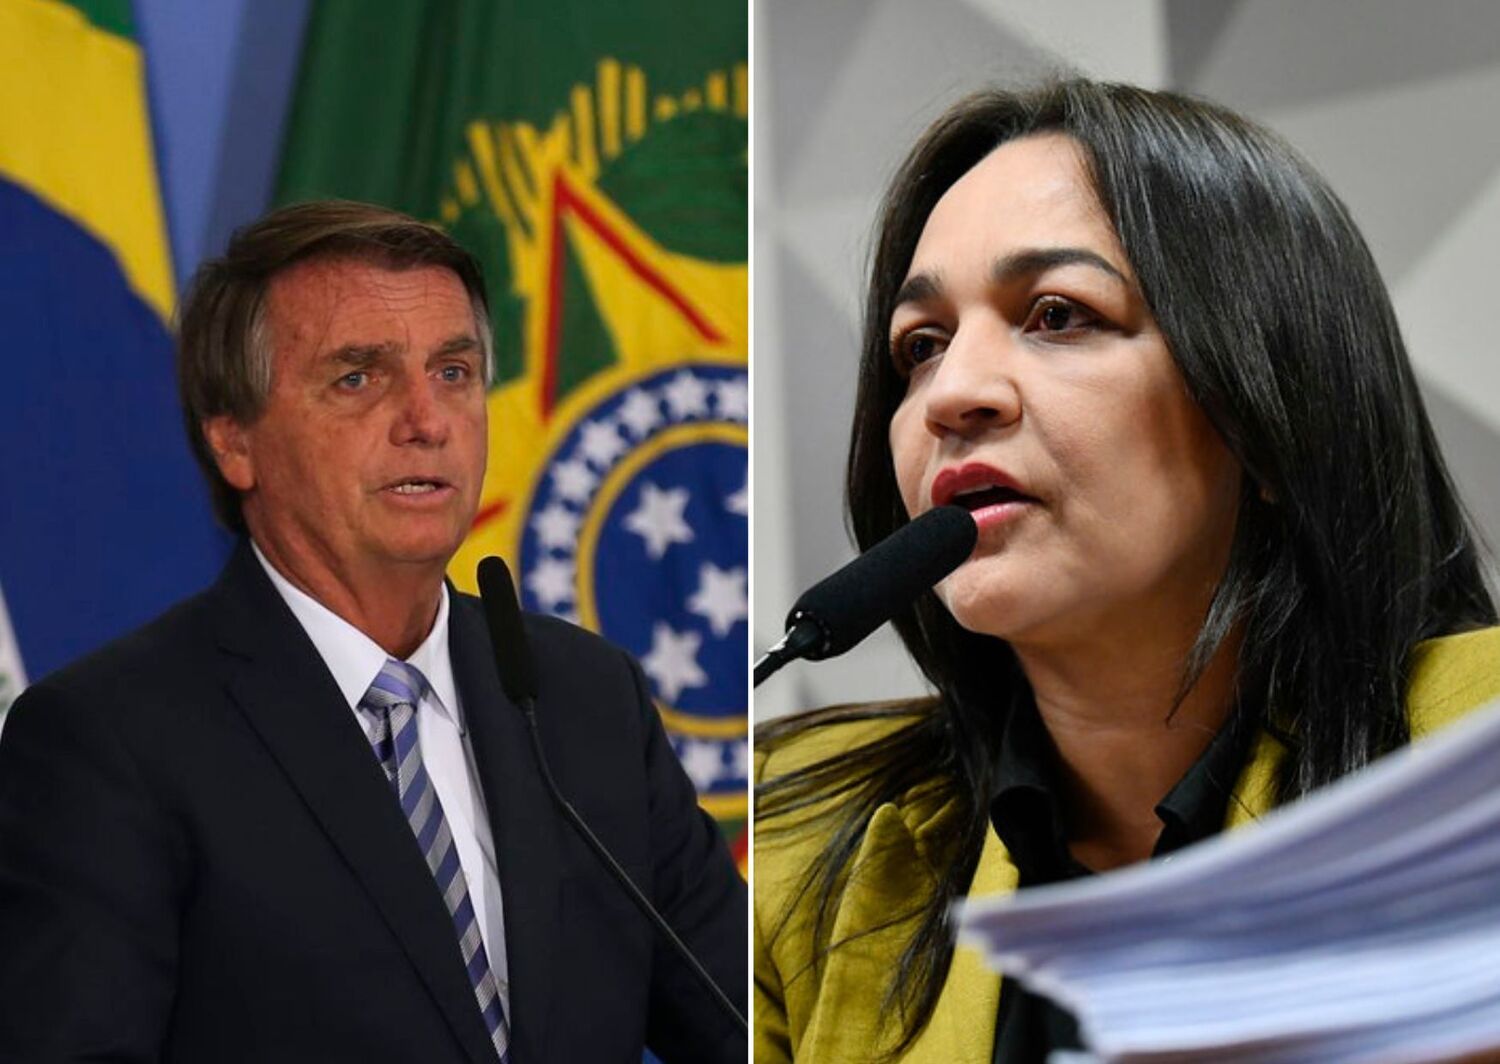 Para Eliziane Gama, já há elementos suficientes para prender Bolsonaro